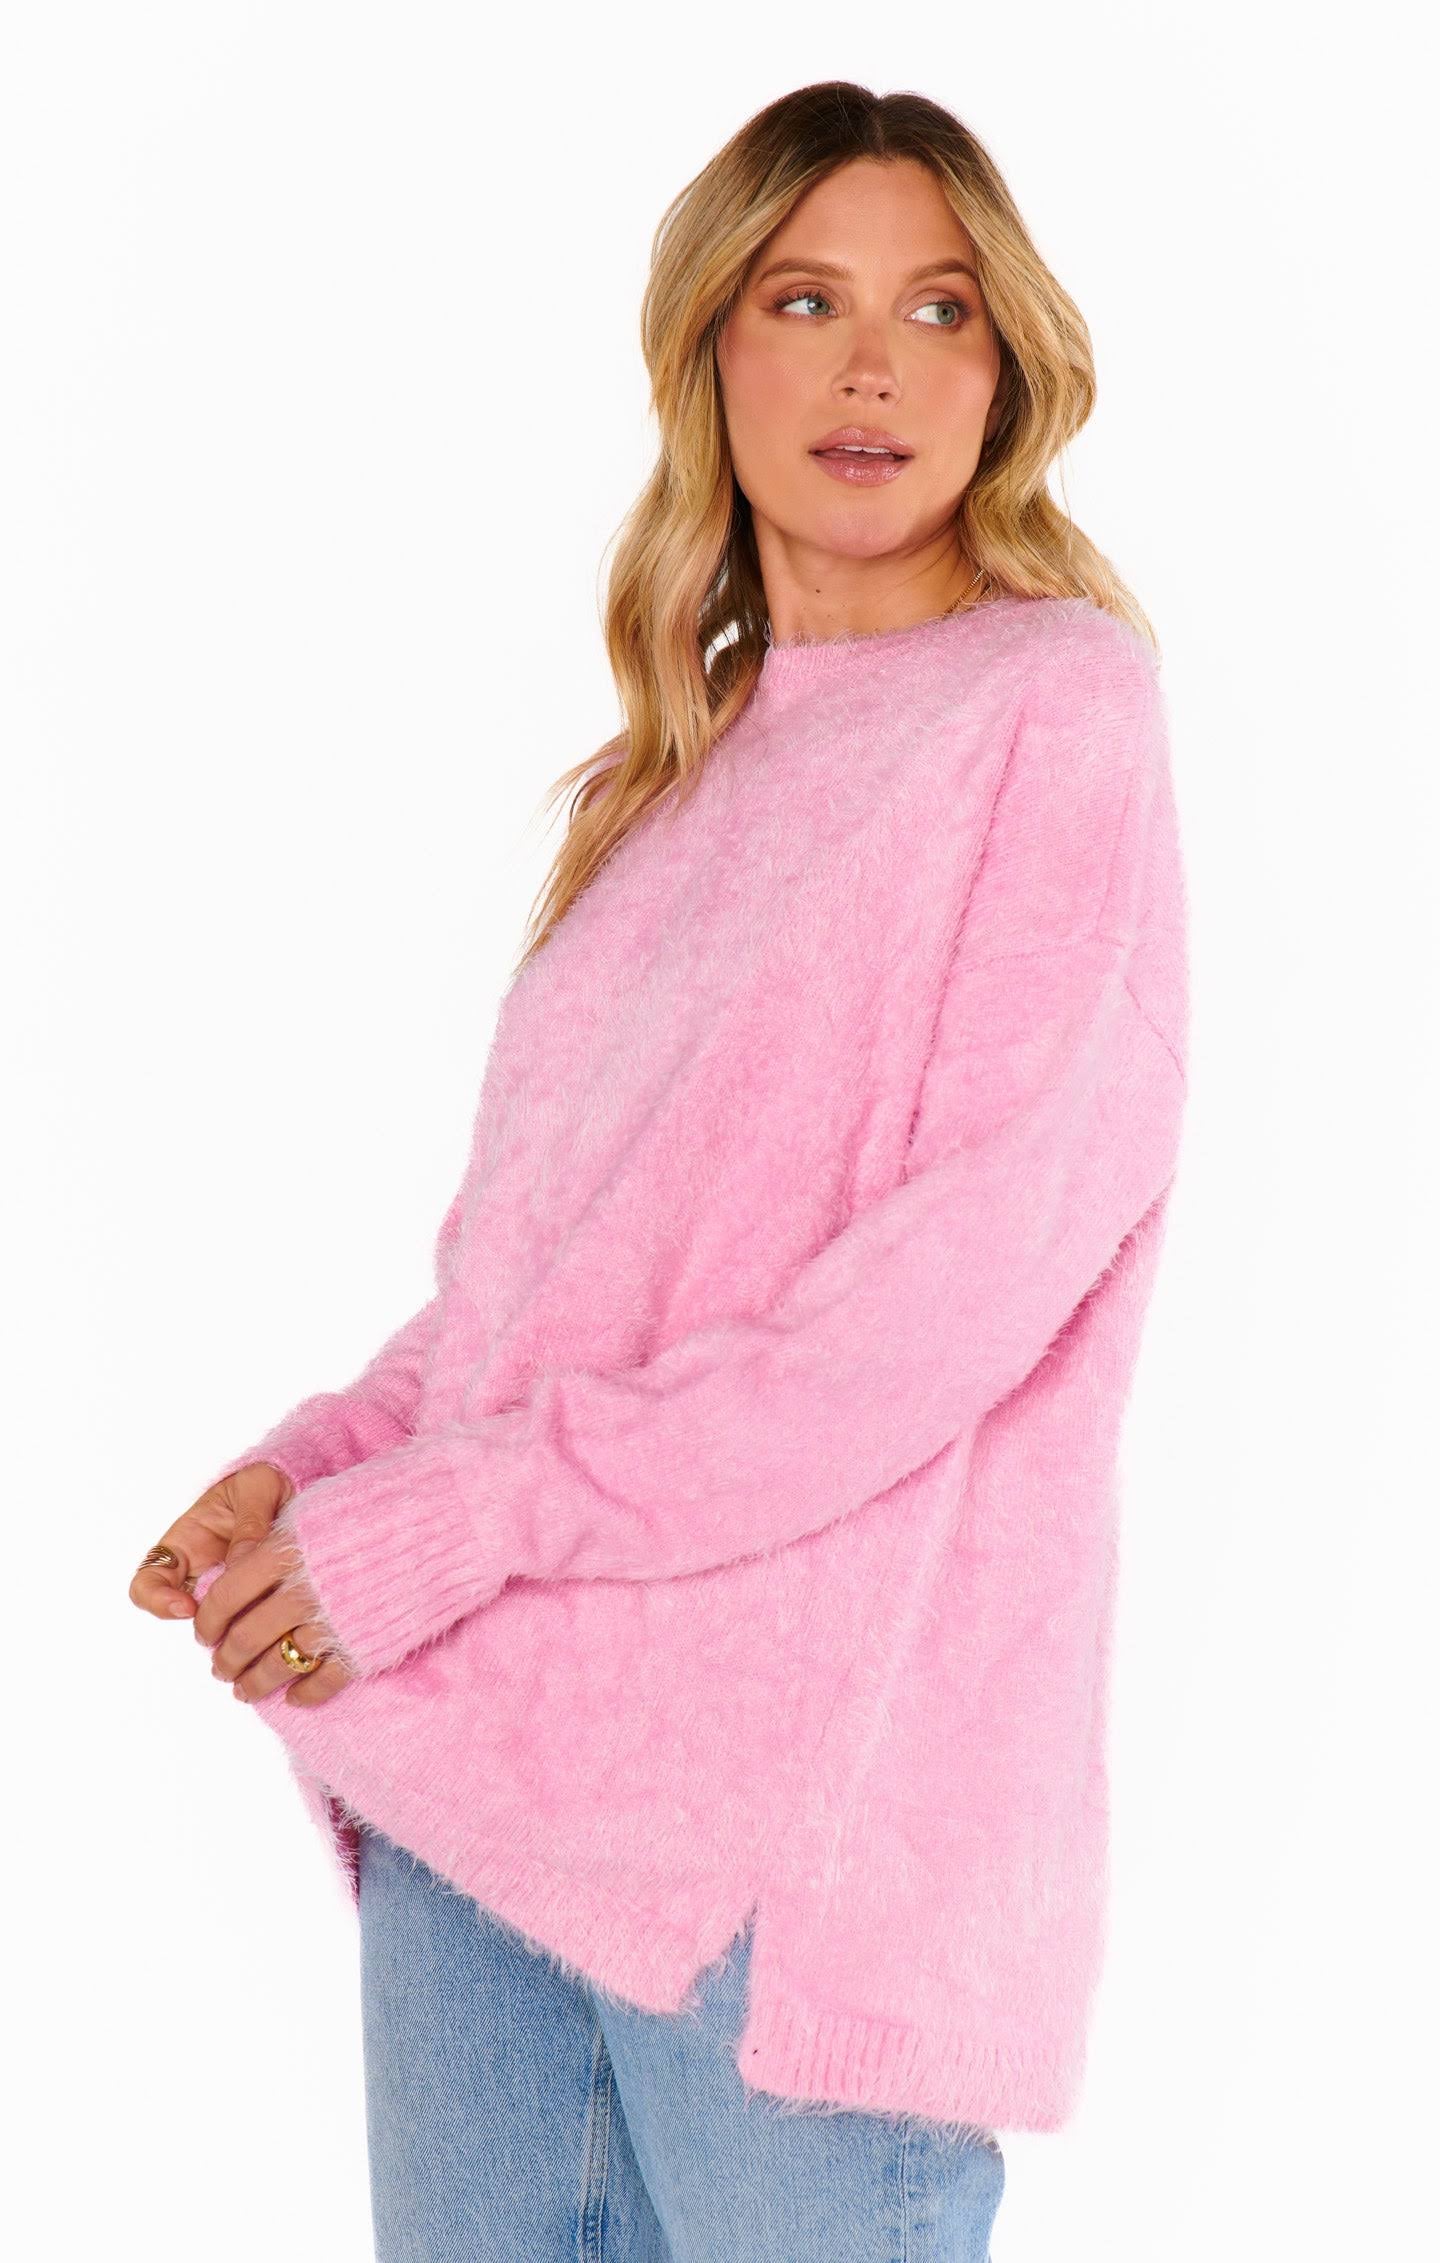 MUMU Bonfire Sweater- Pink Fuzzy Knit